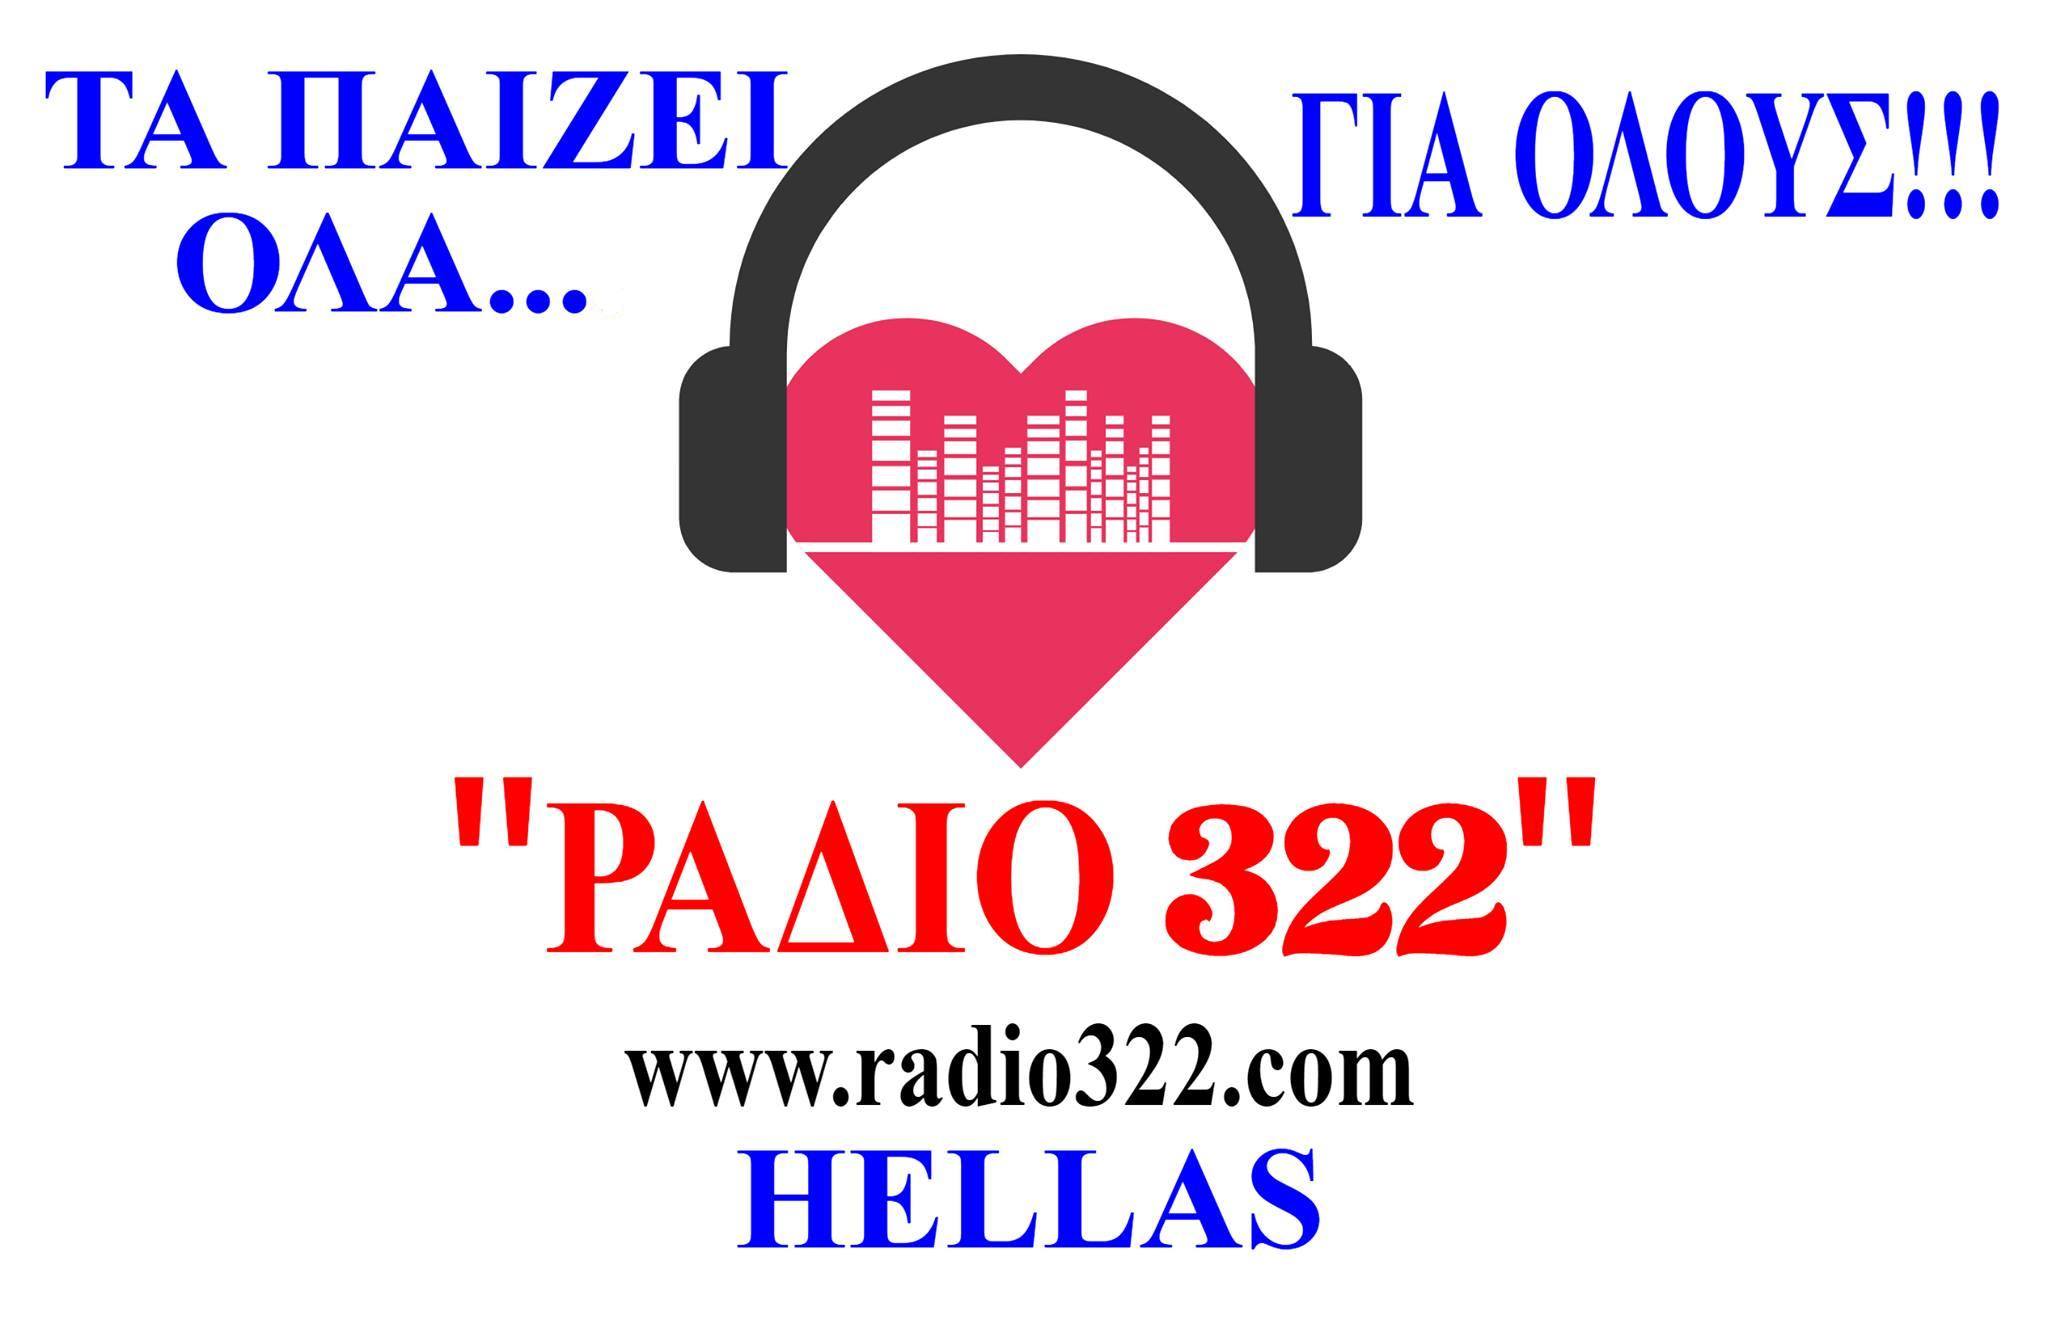 RADIO322